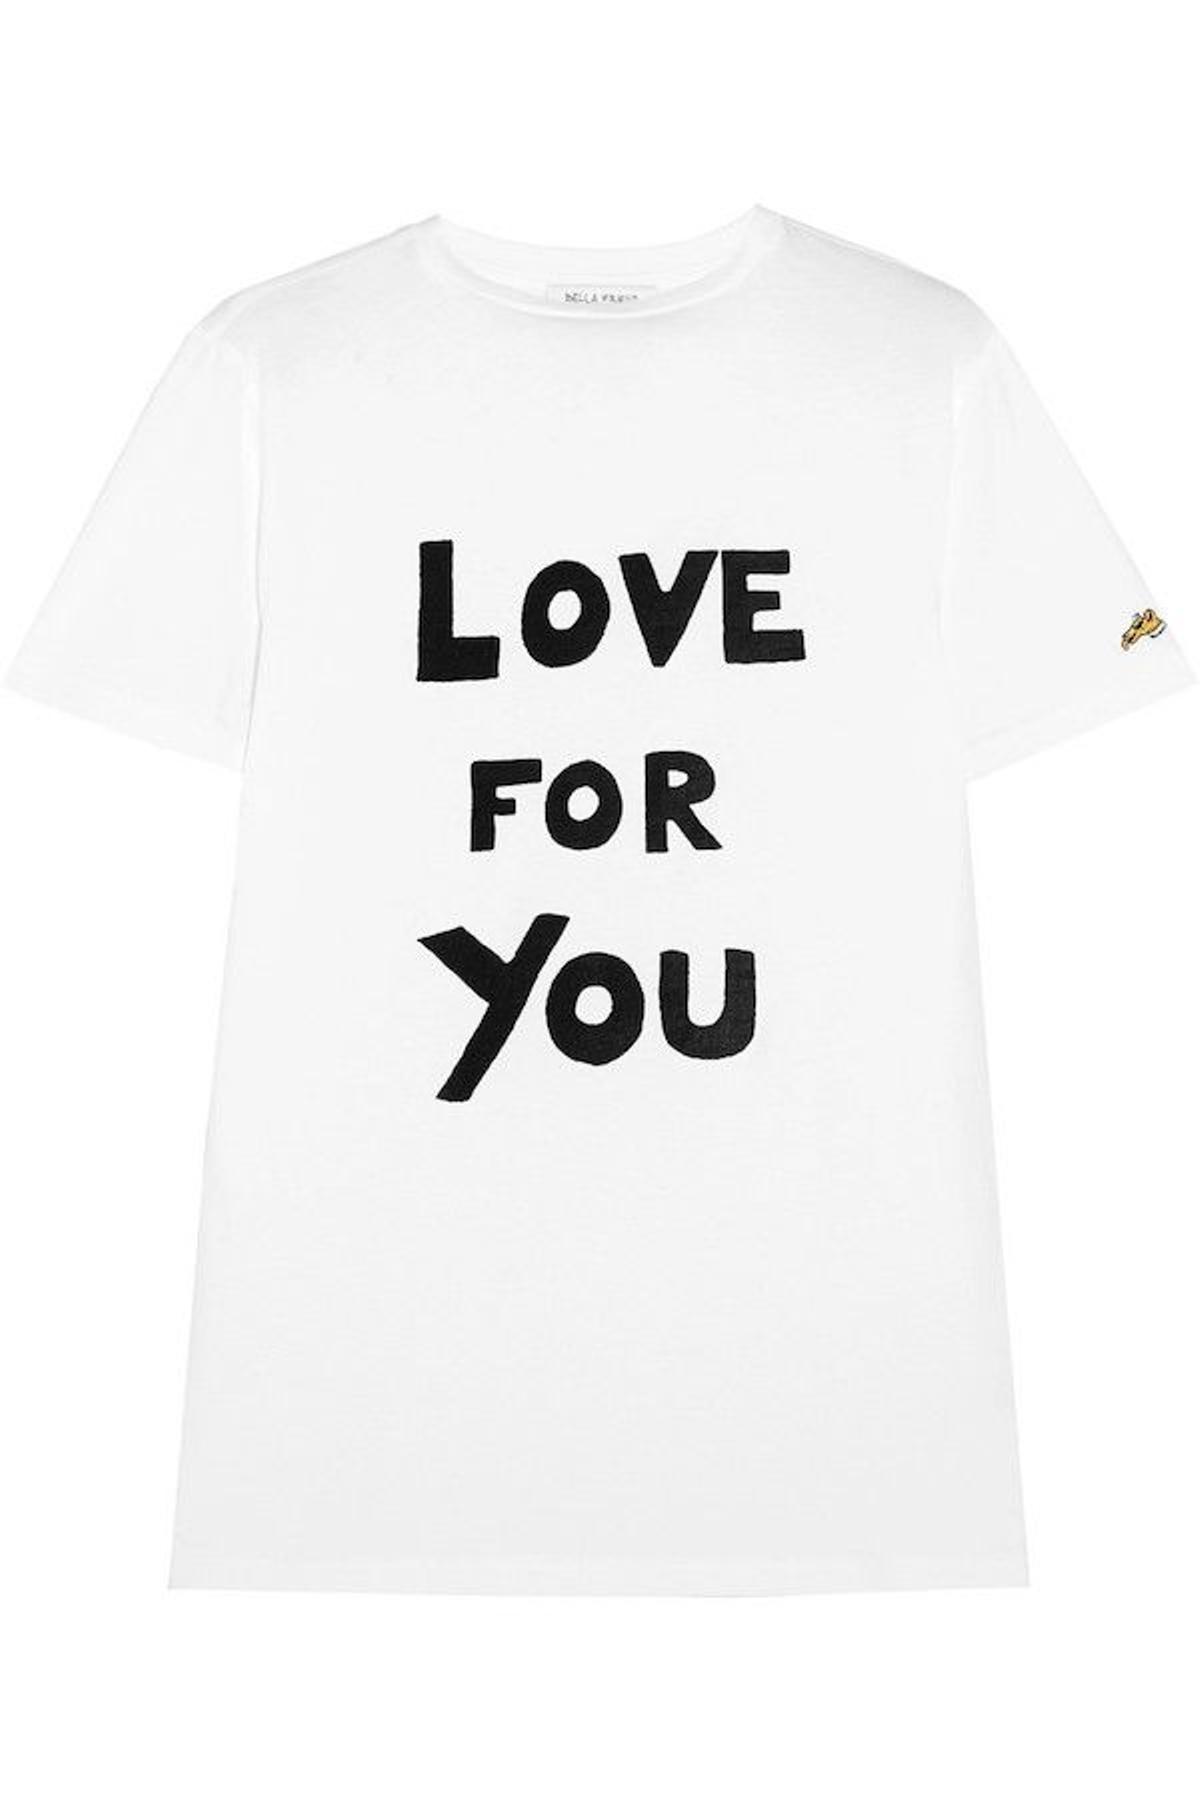 Camisetas 'it': La enamorada